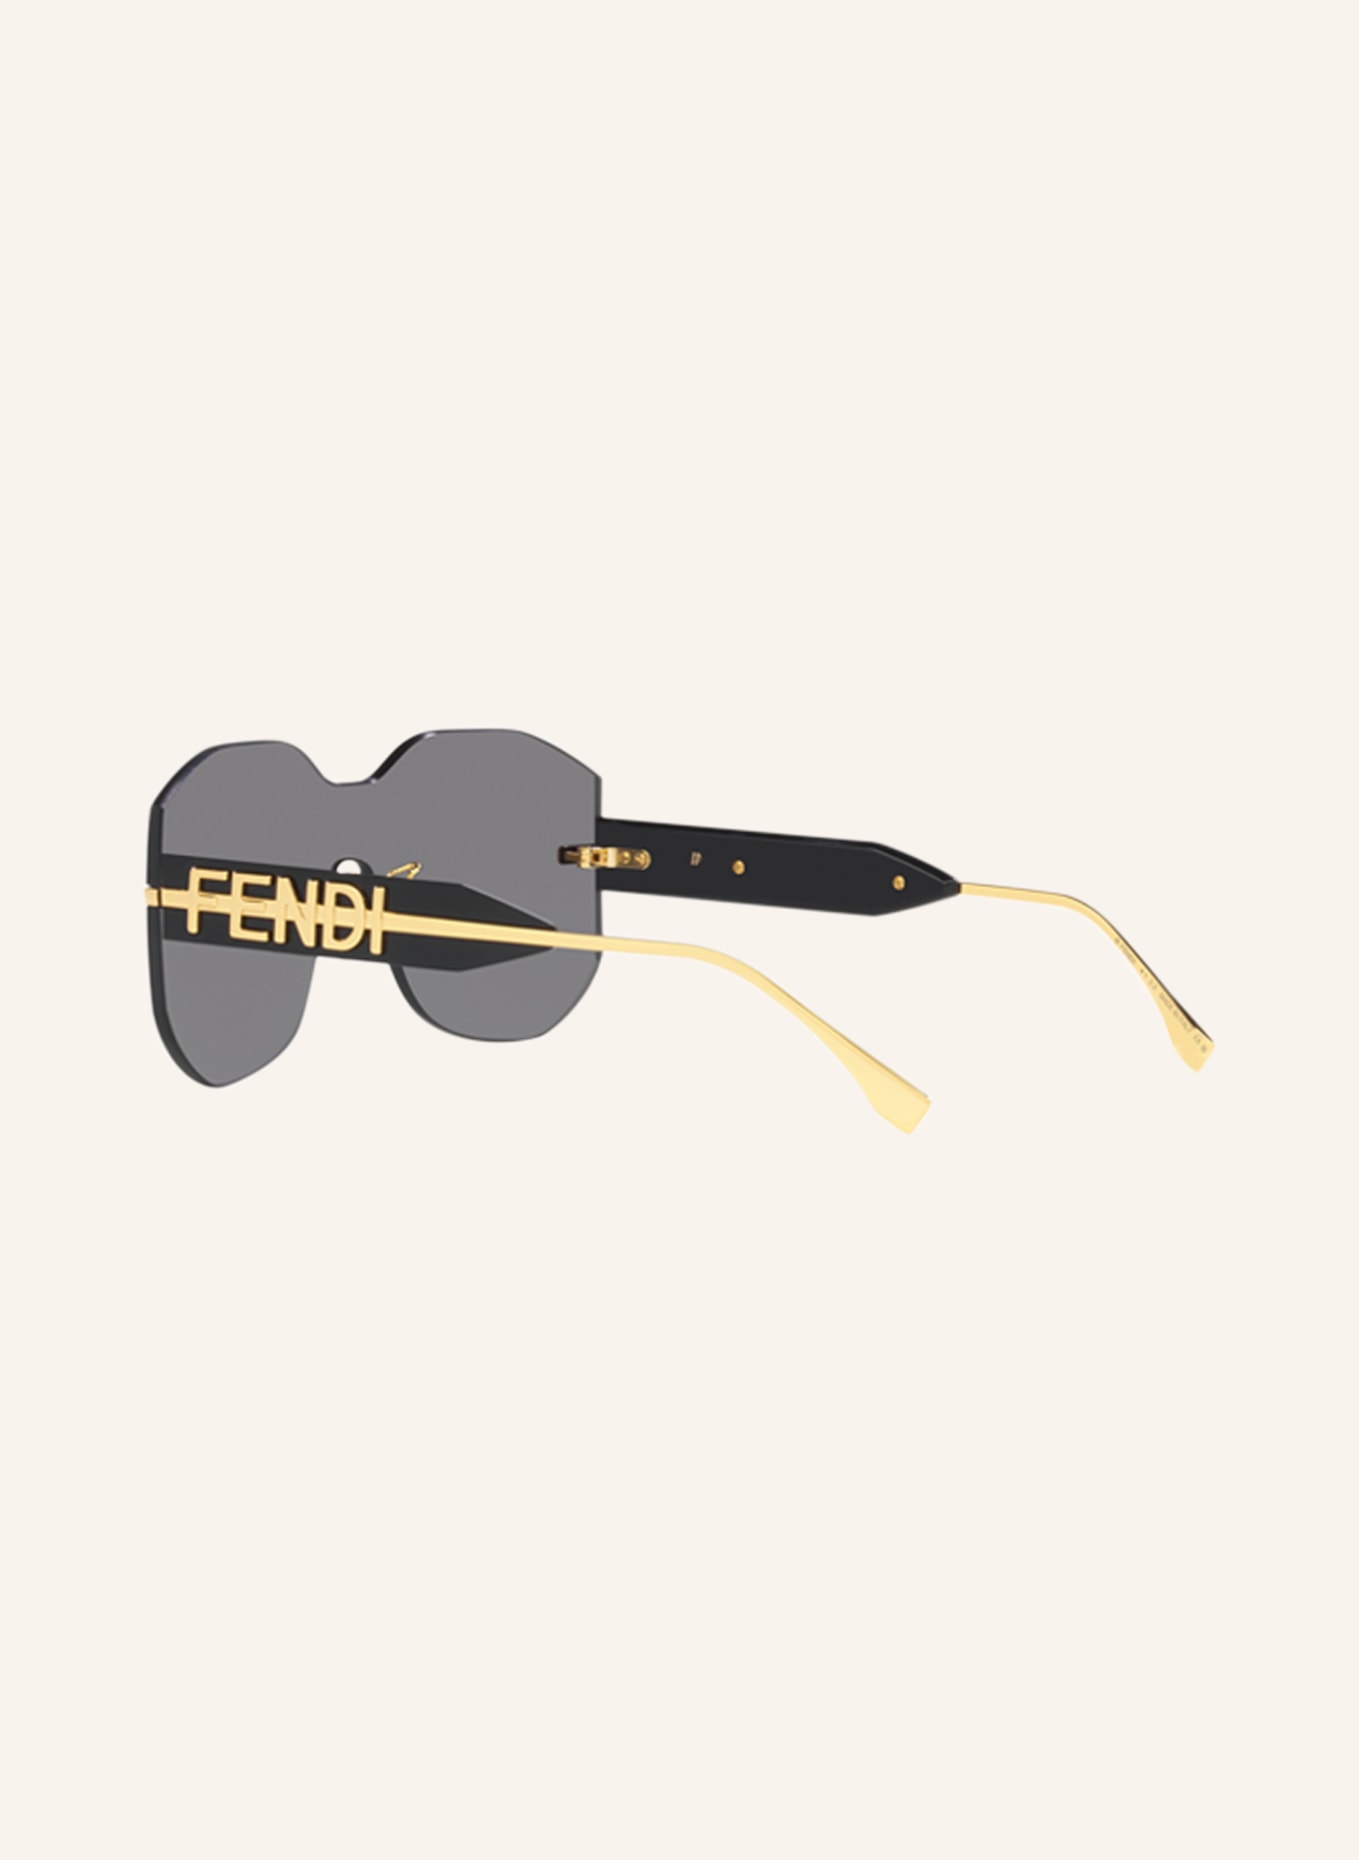 FENDI Sunglasses FN000635, Color: 2390L1 - GOLD/ DARK GRAY (Image 4)